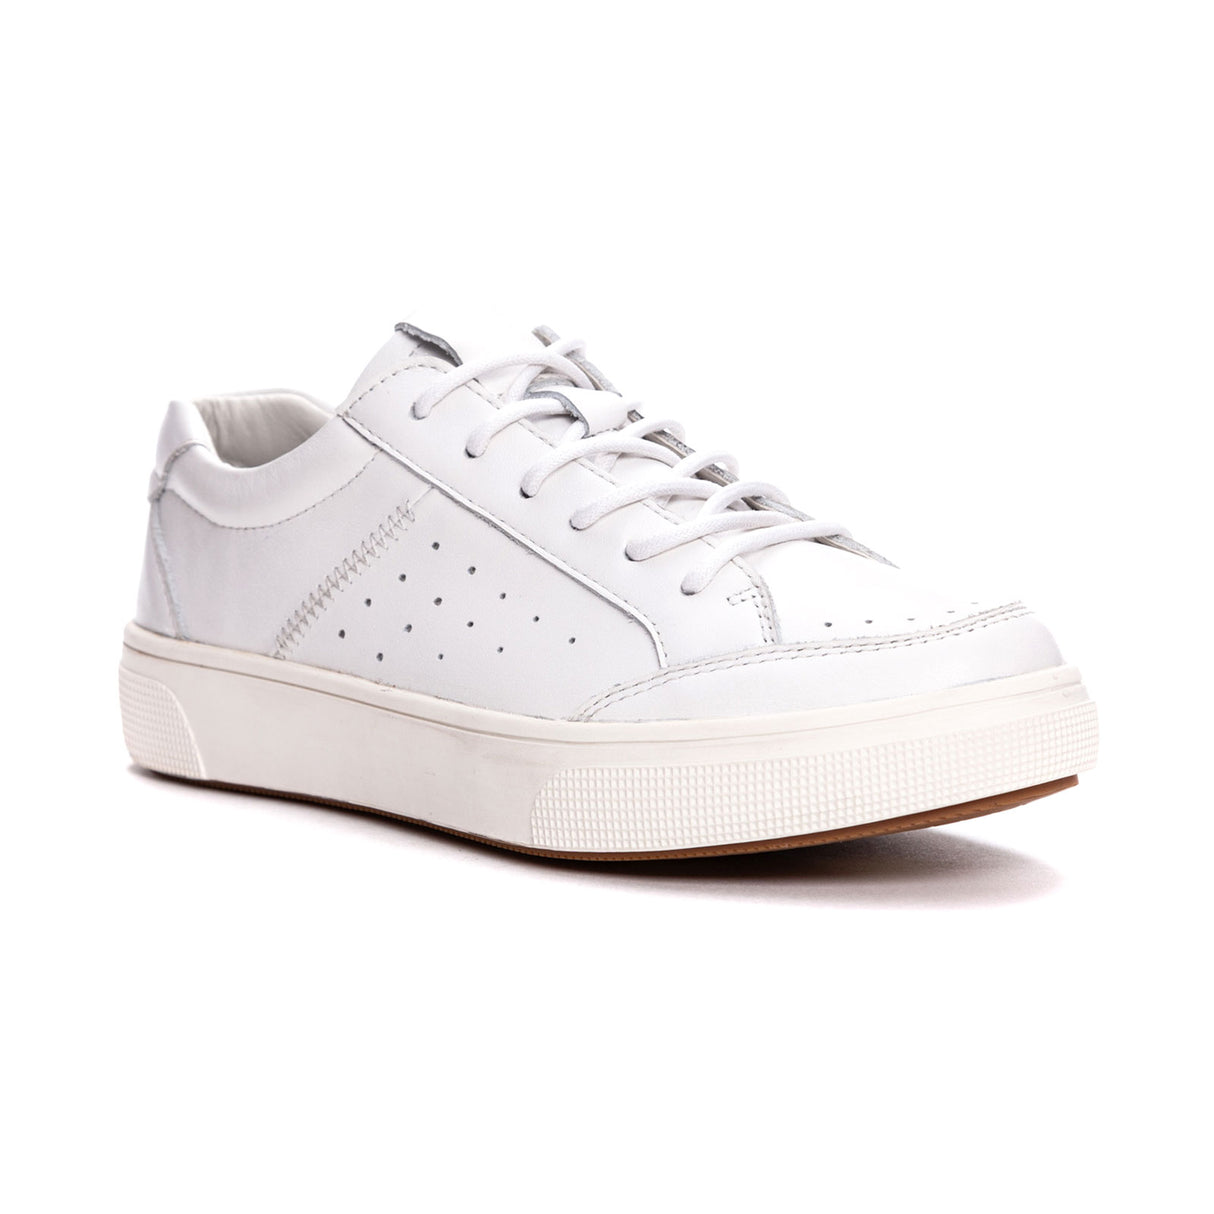 Propet Karissa Sneaker (Women) - White Dress-Casual - Sneakers - The Heel Shoe Fitters